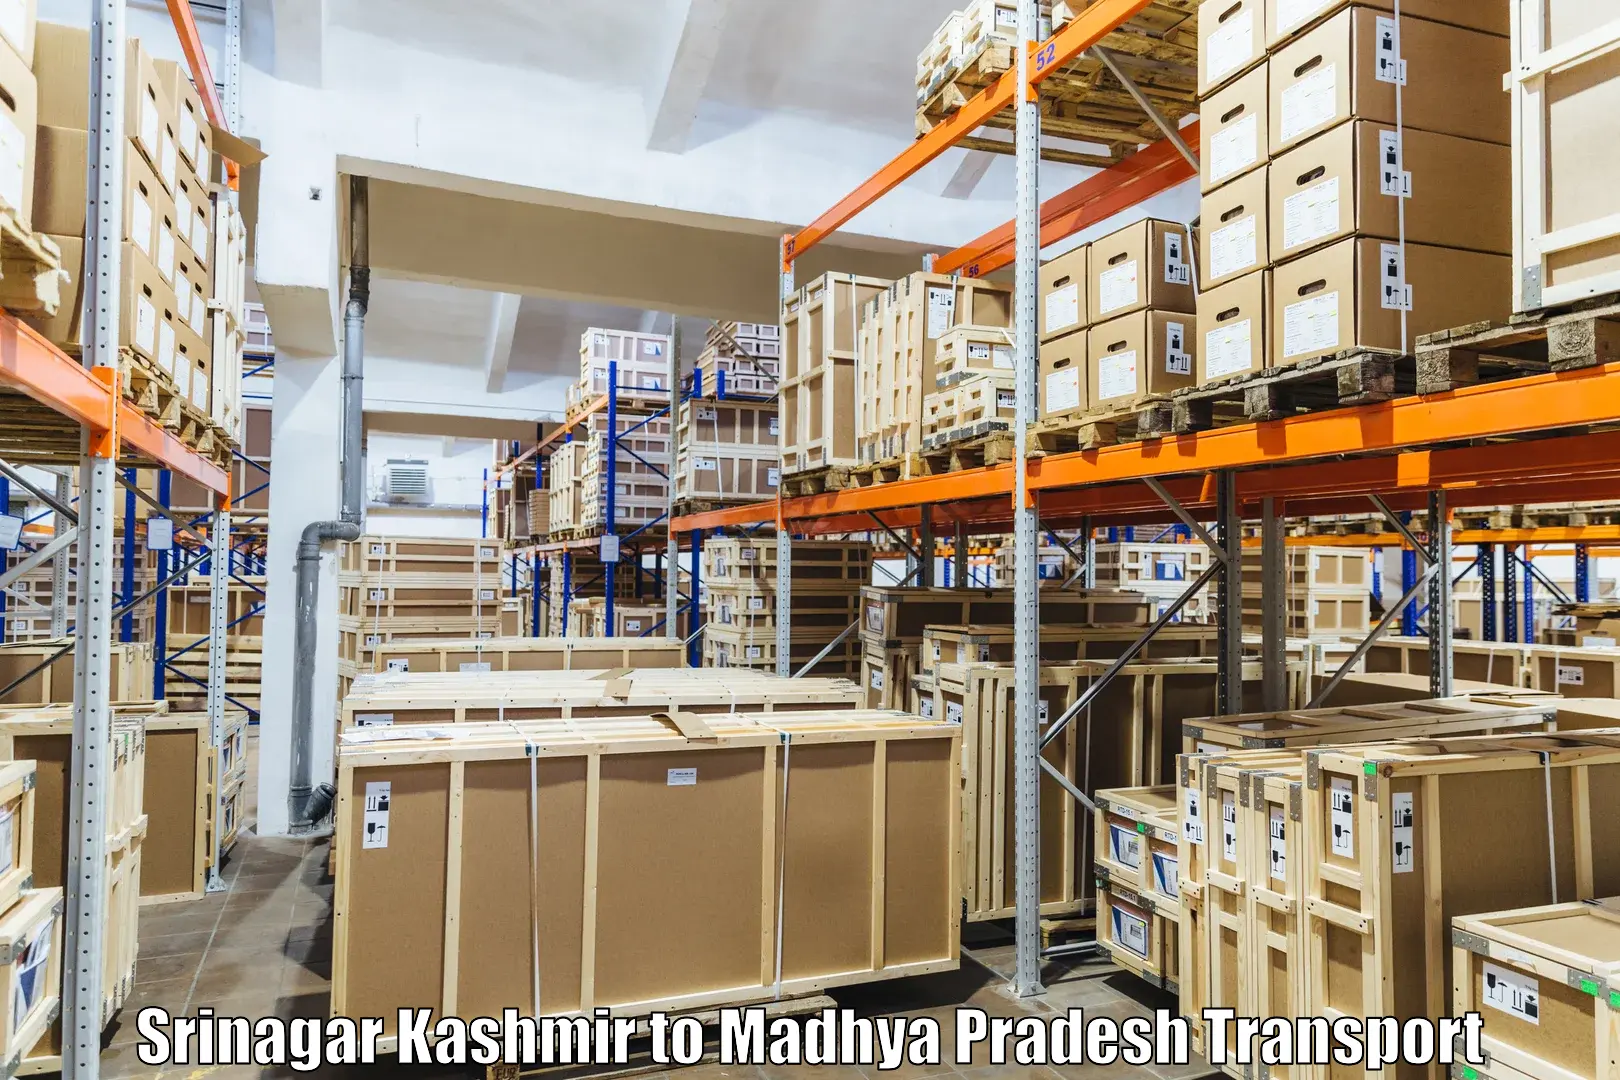 Shipping partner Srinagar Kashmir to Shahgarh